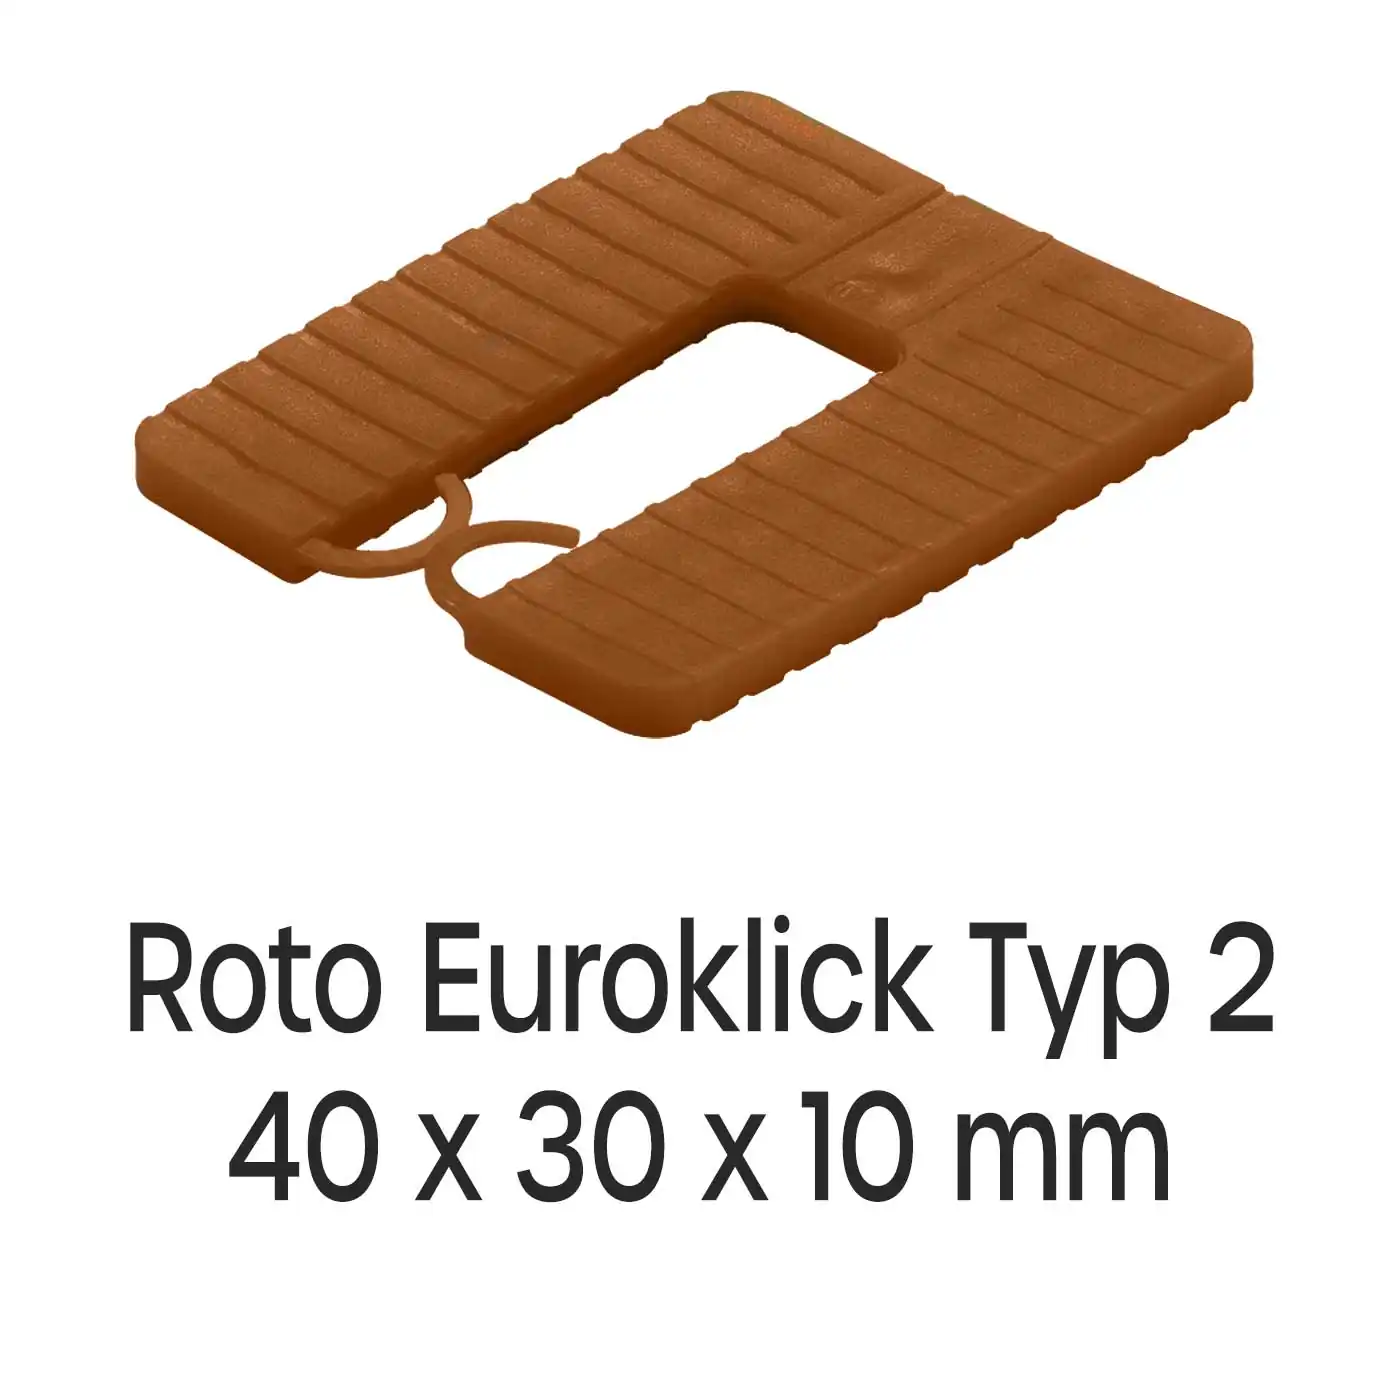 Distanzplatten Roto Euroklick Typ 2 40 x 30 x 10 mm 500 Stück